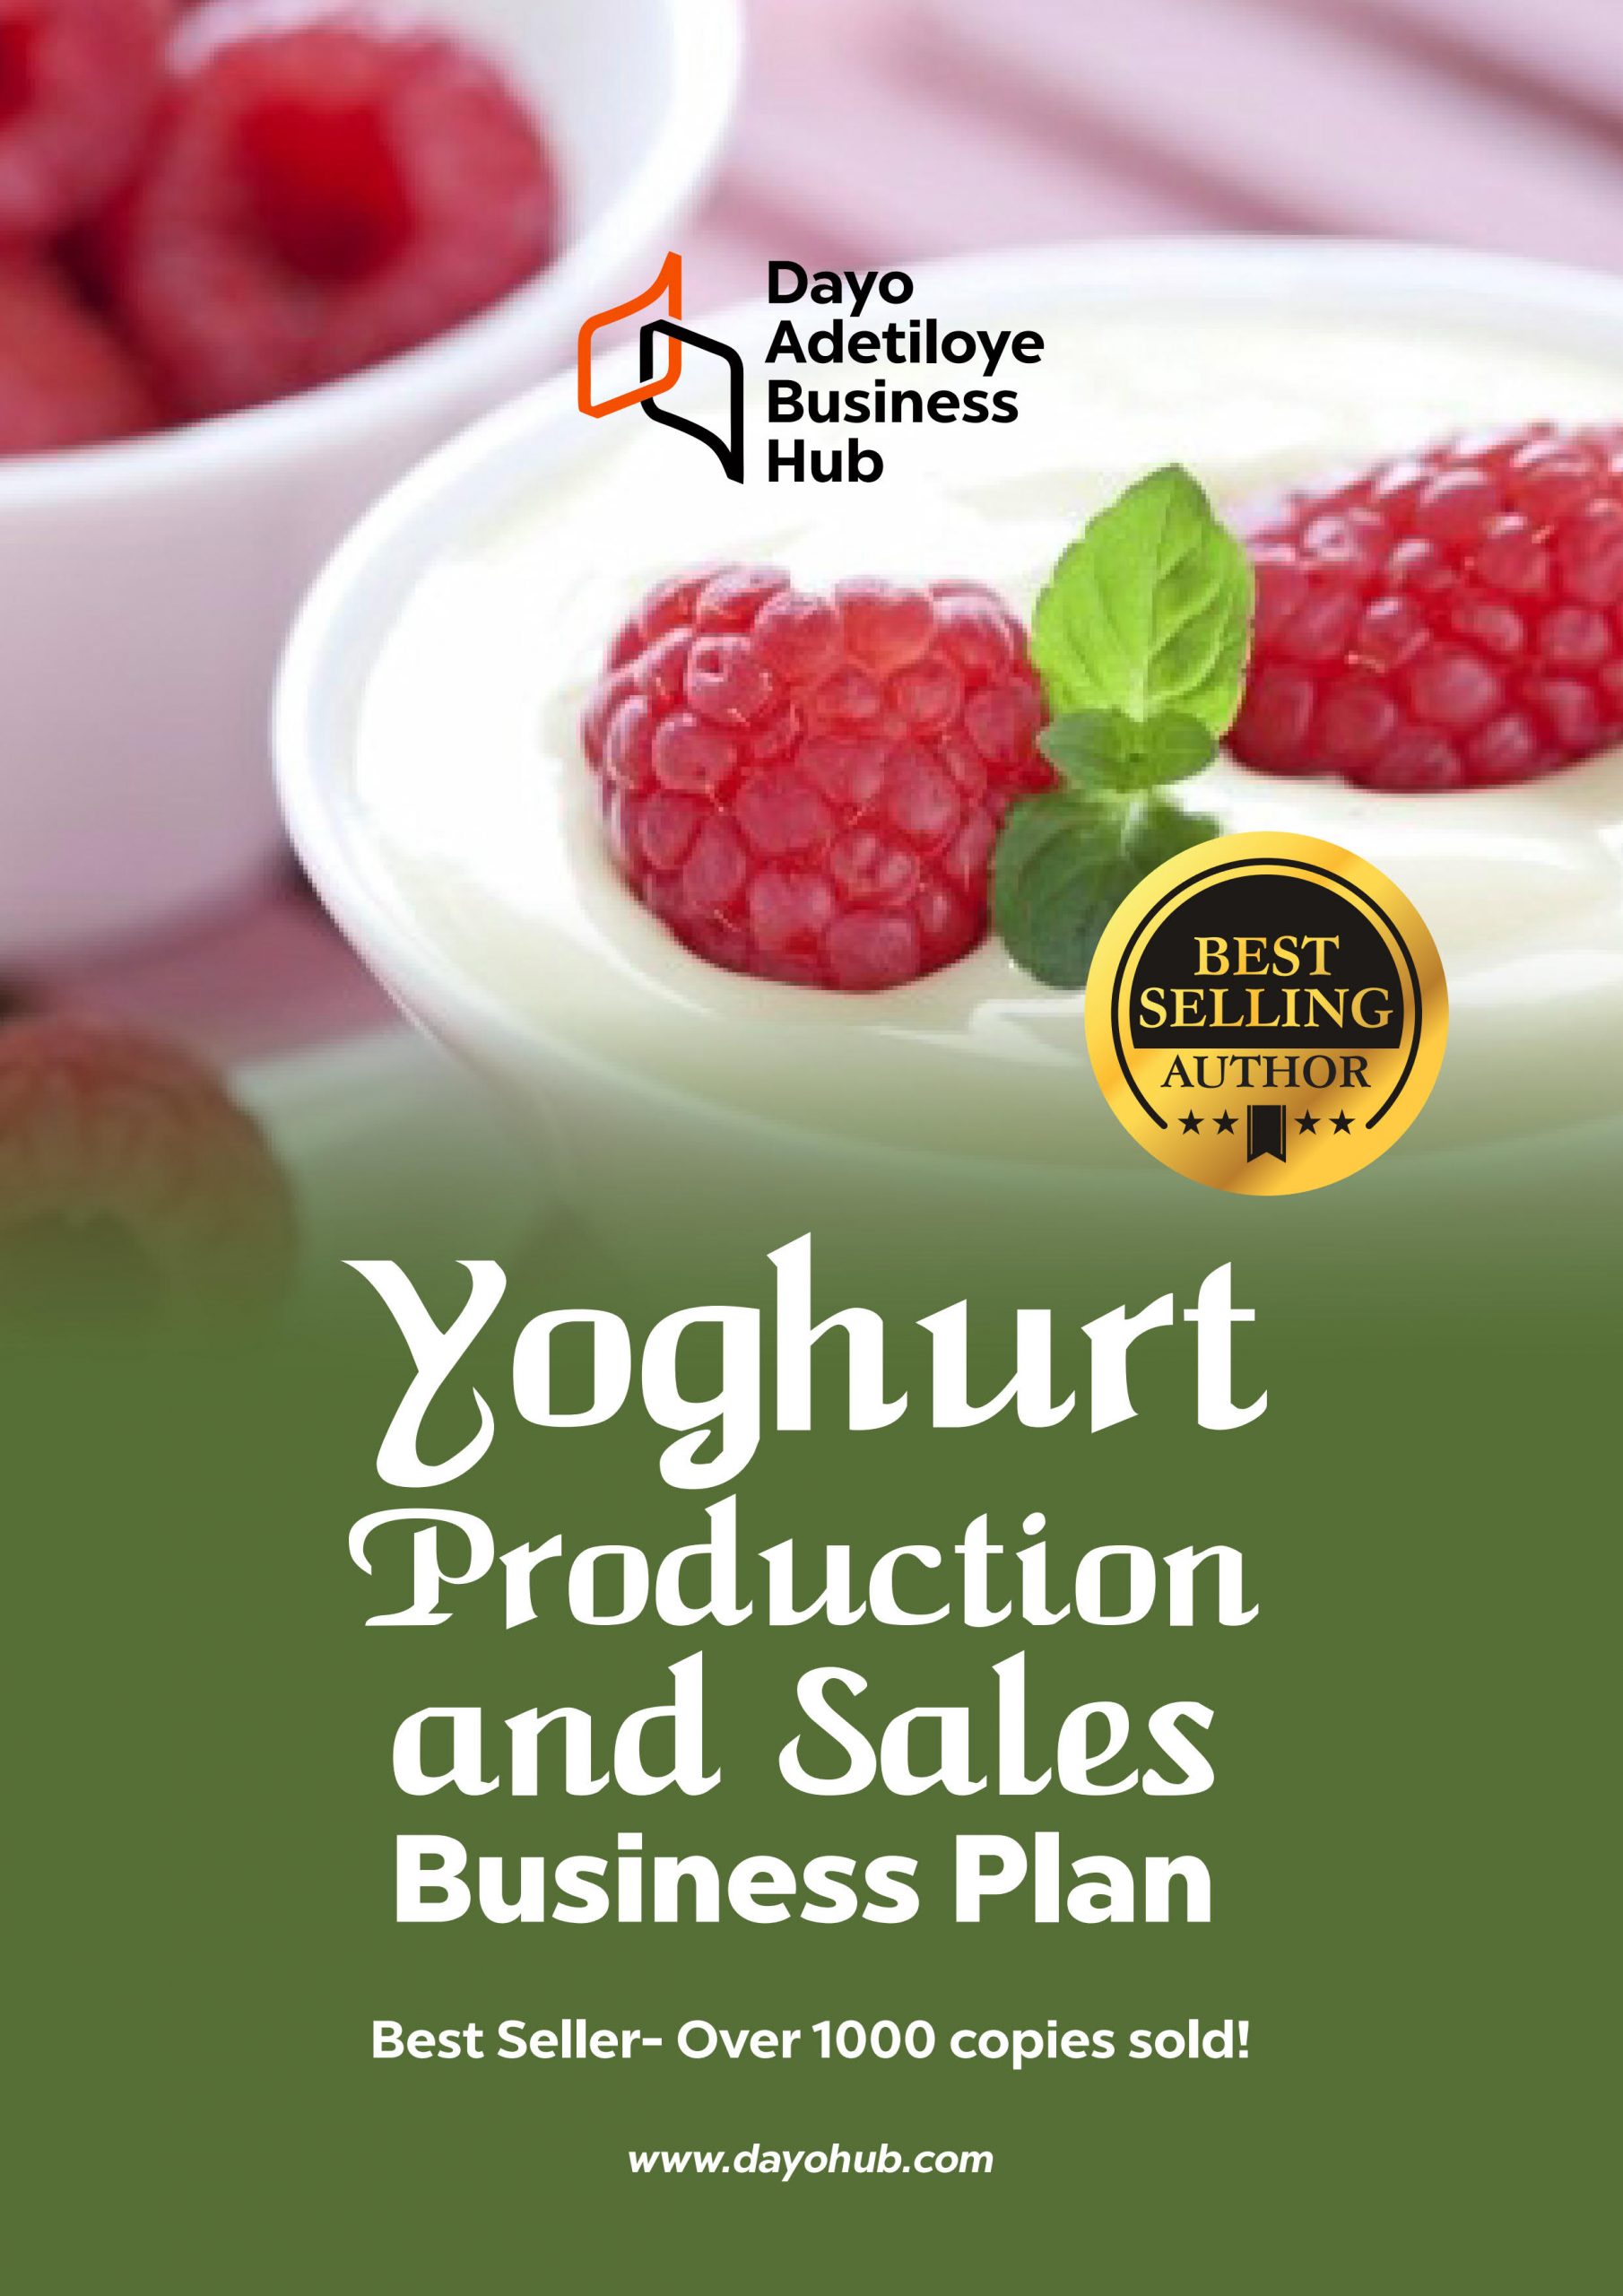 yogurt manufacturing business plan pdf